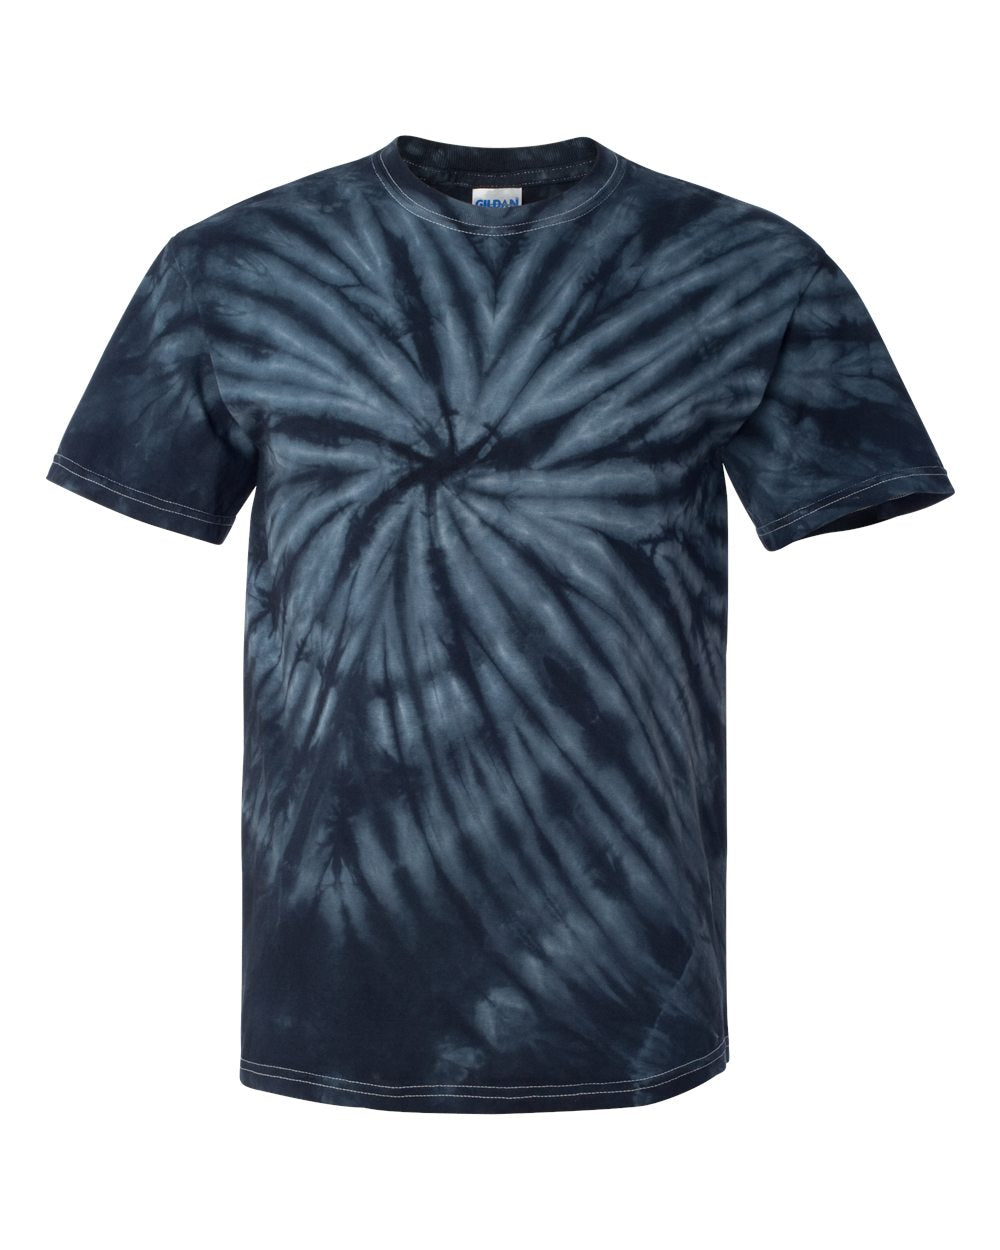 Northern Hills Design 3 Tie Dye t-shirt